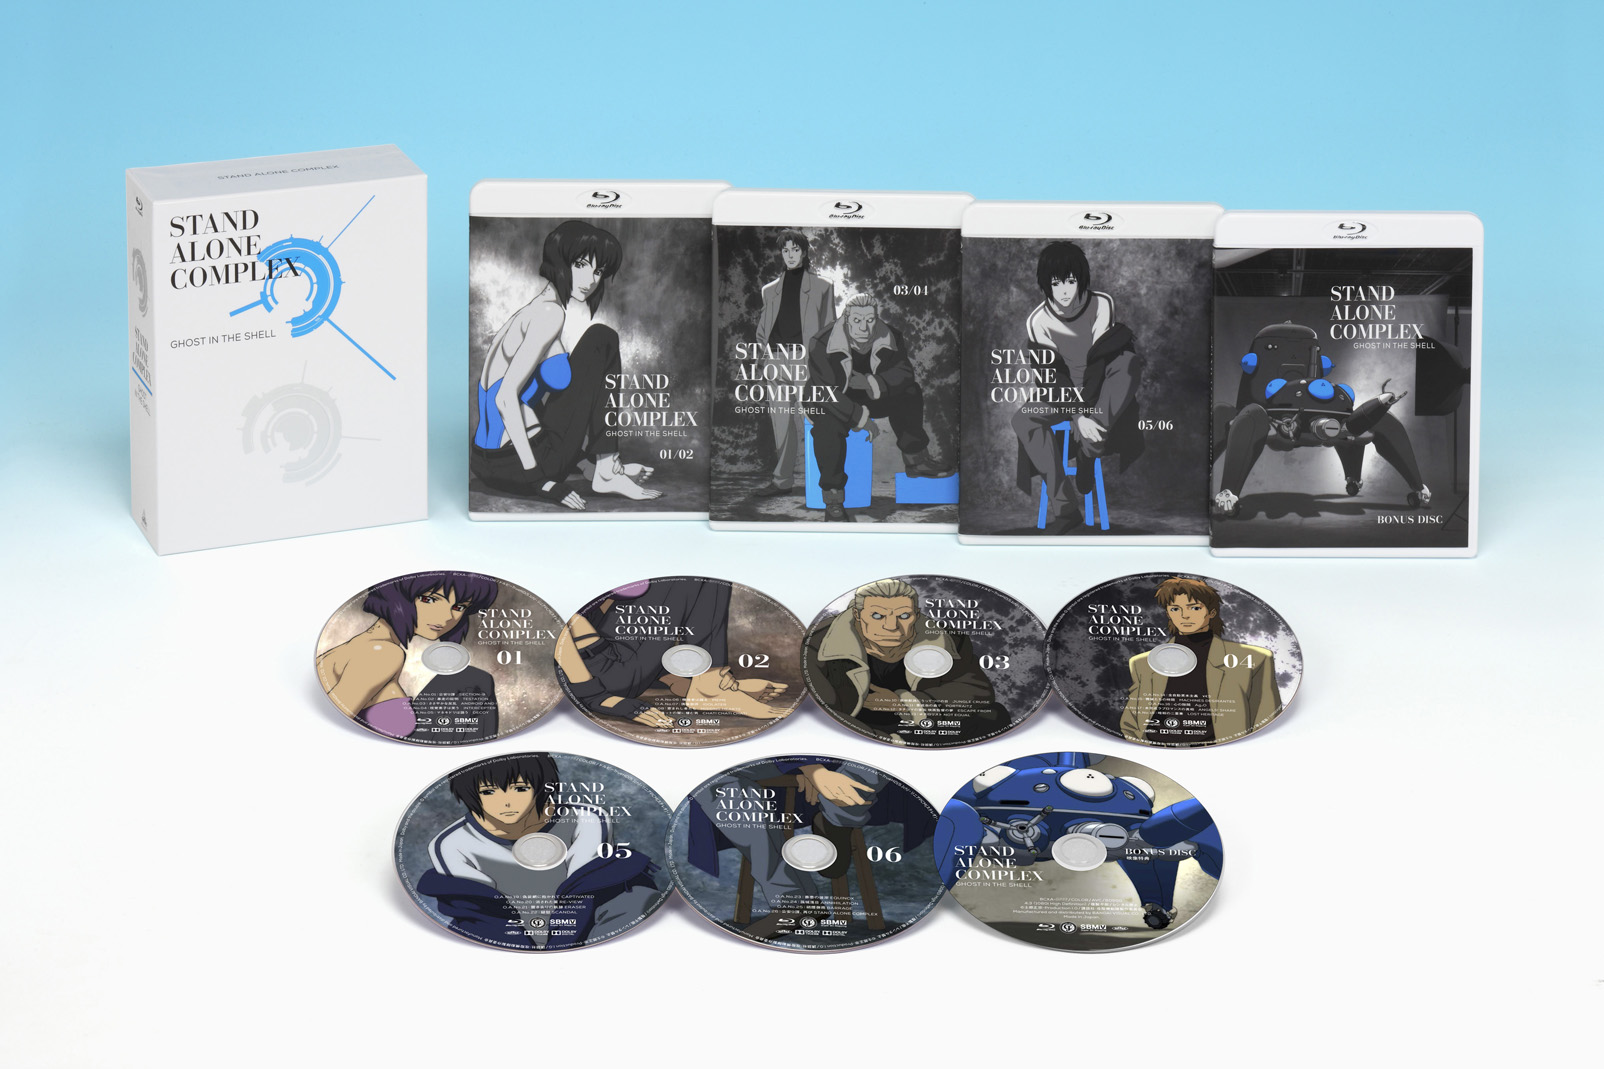 未開封Blu-ray】攻殻機動隊 S.A.C. 2nd GIG Blu-ray Disc BOX:SPECIAL 